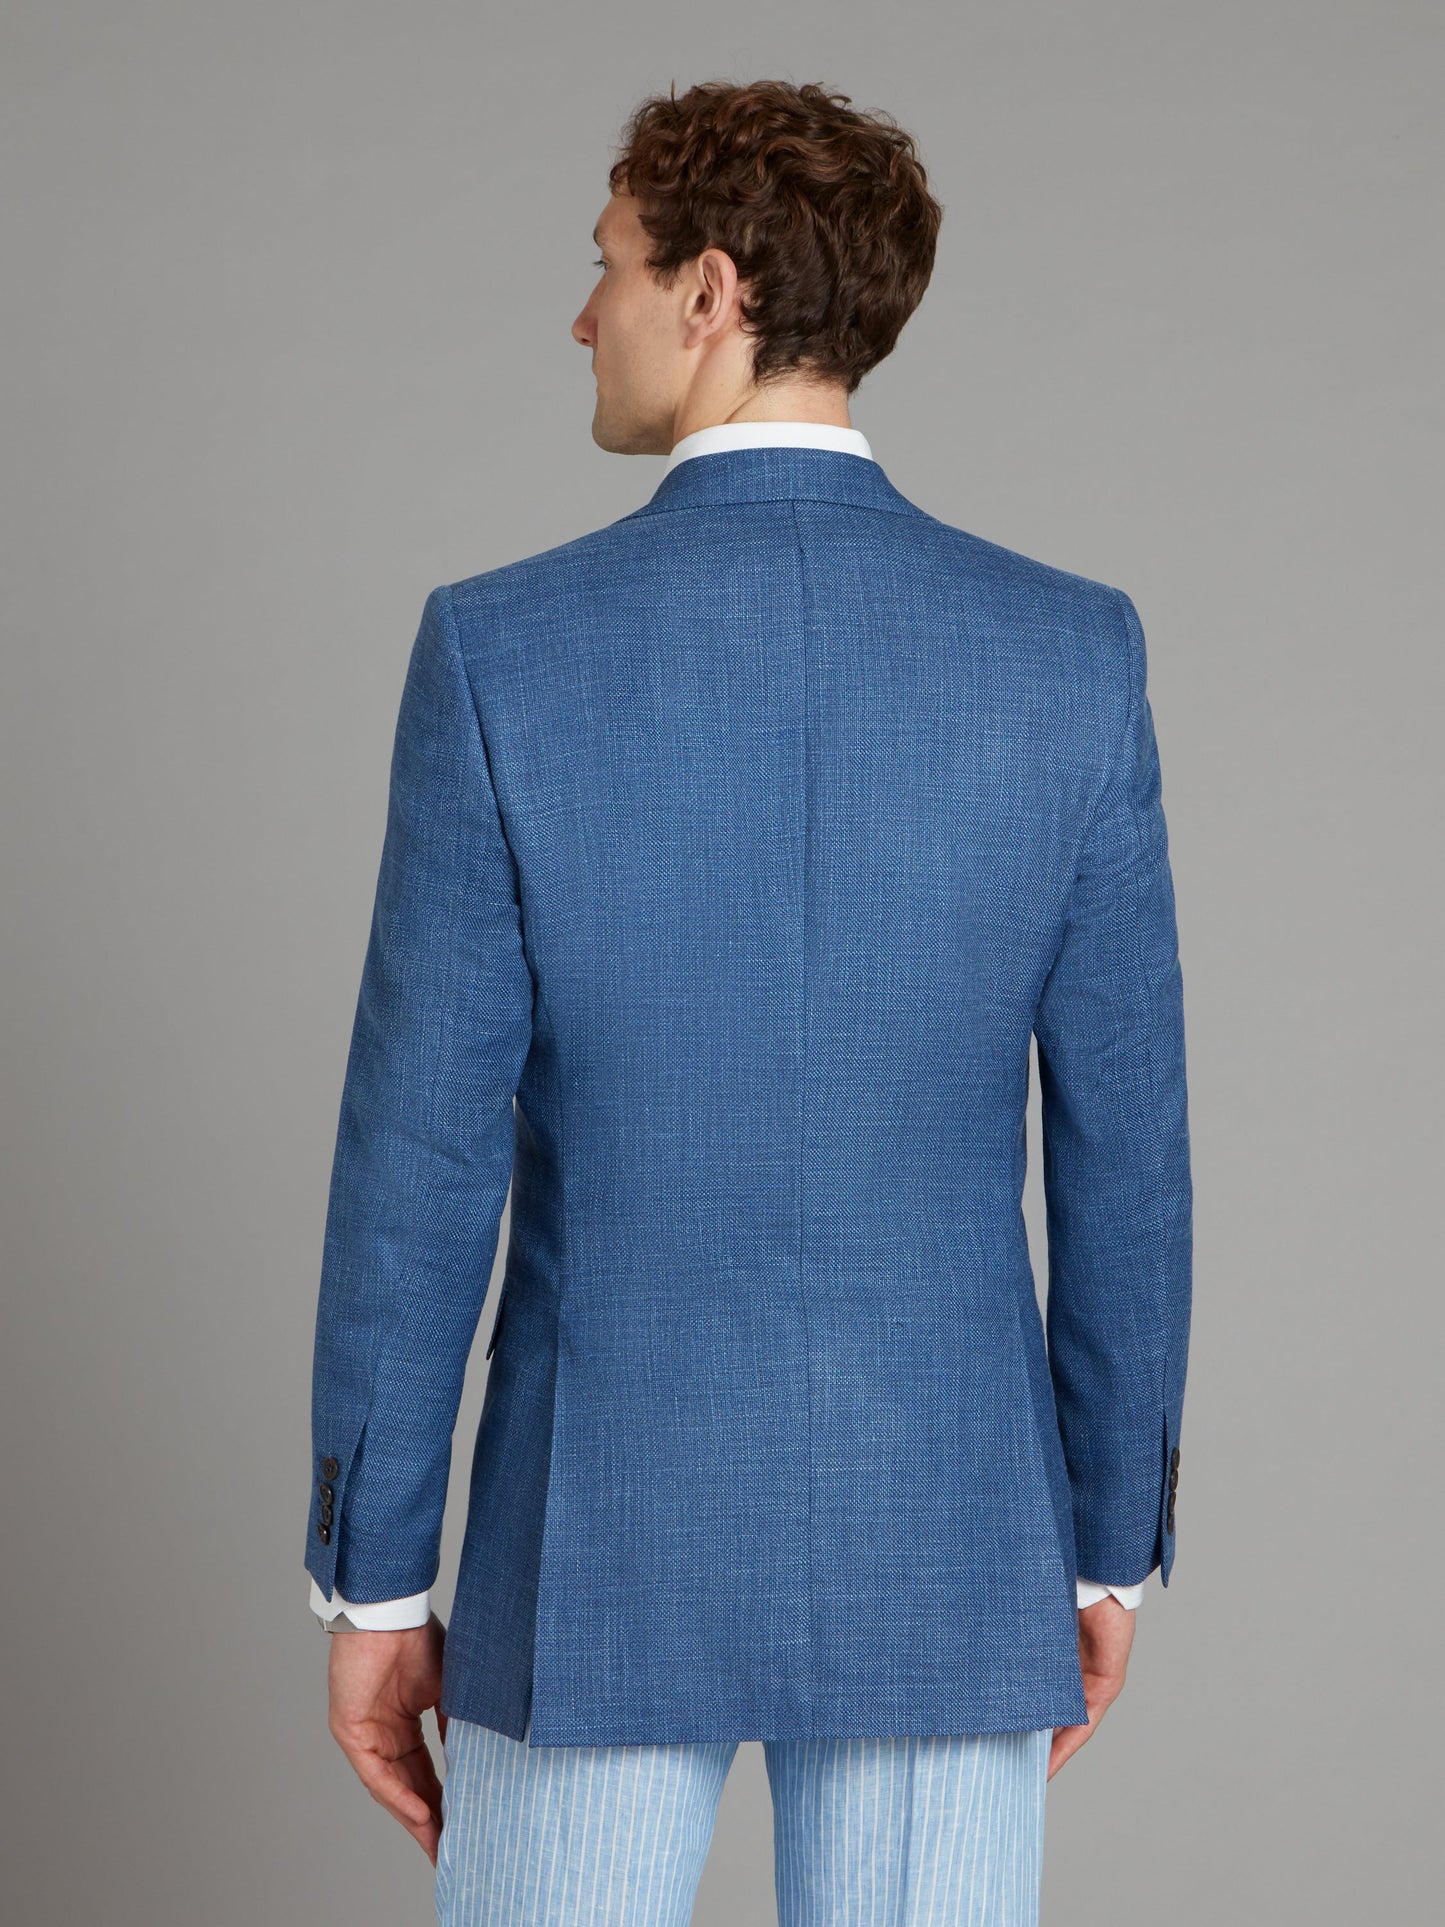 Eaton Jacket - Textured Aegean Blue